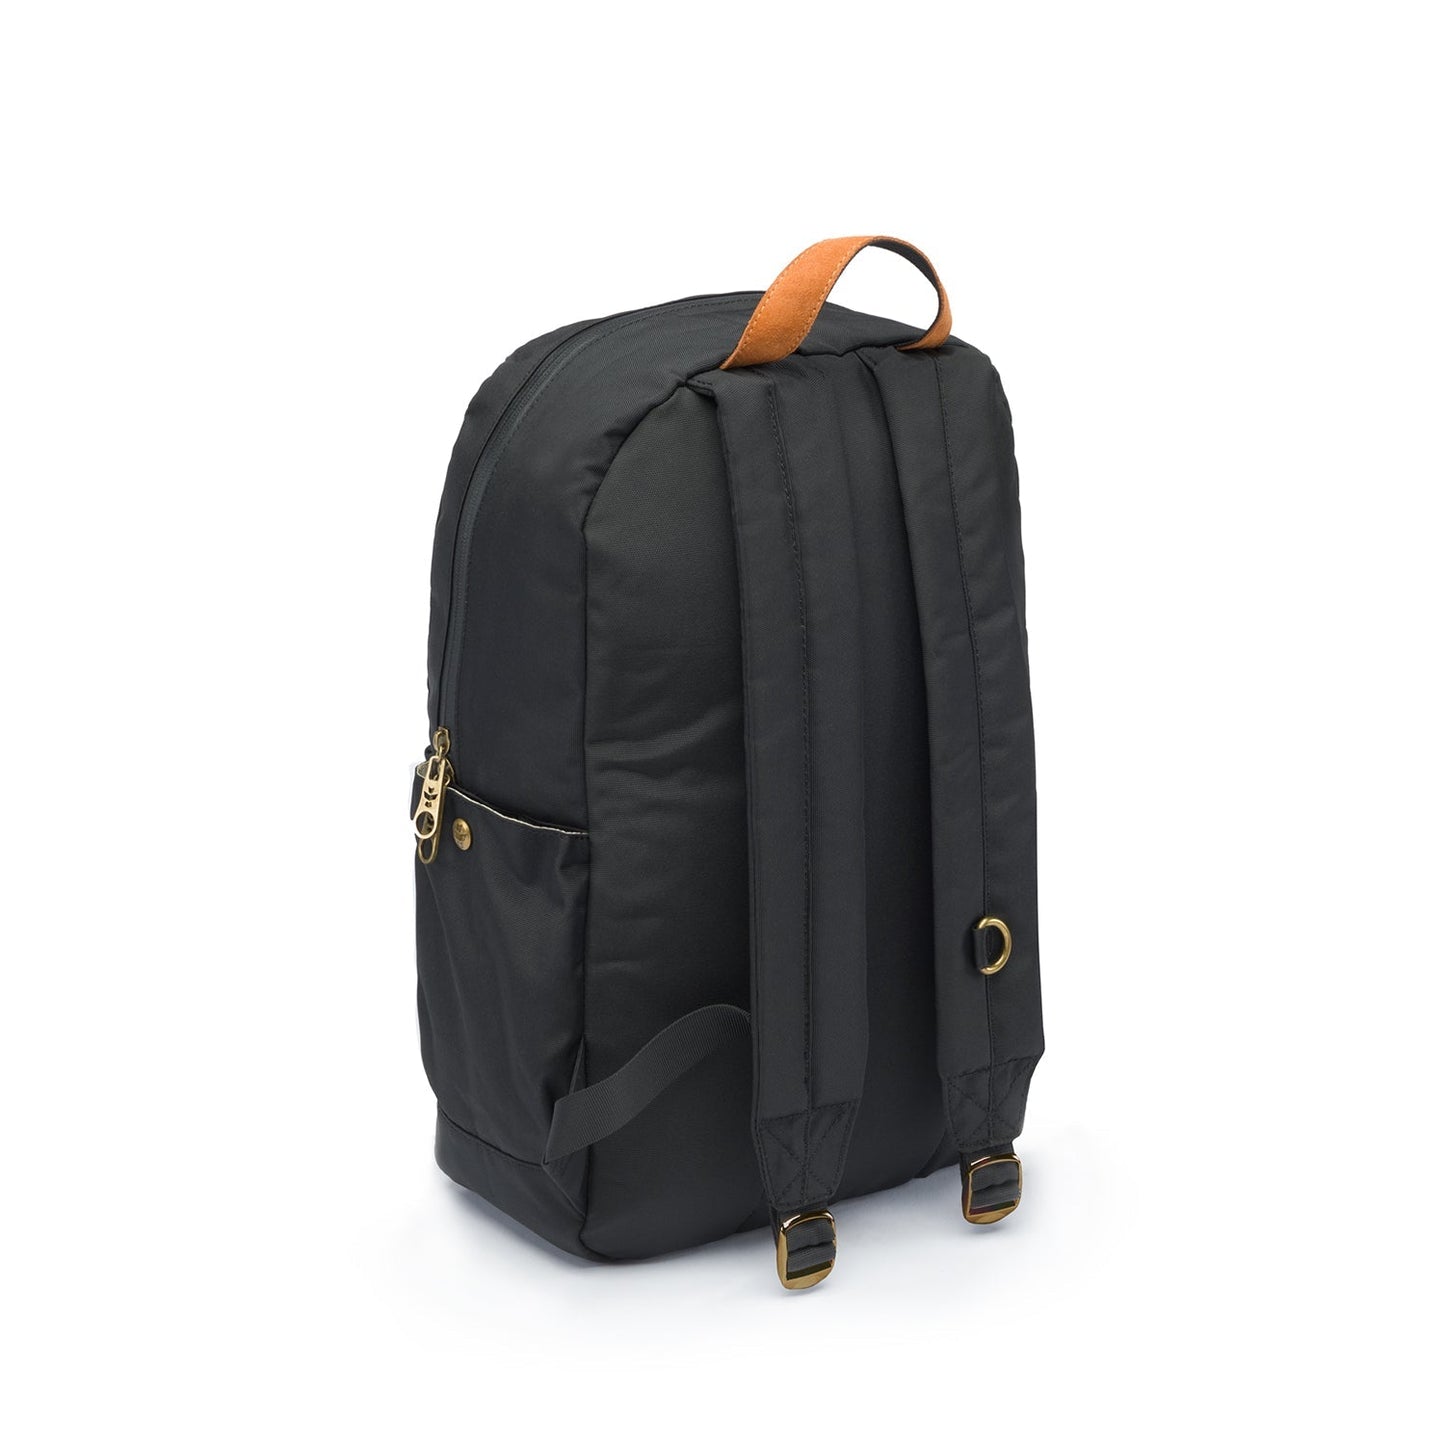 revelrysupply The Explorer - Smell Proof Backpack